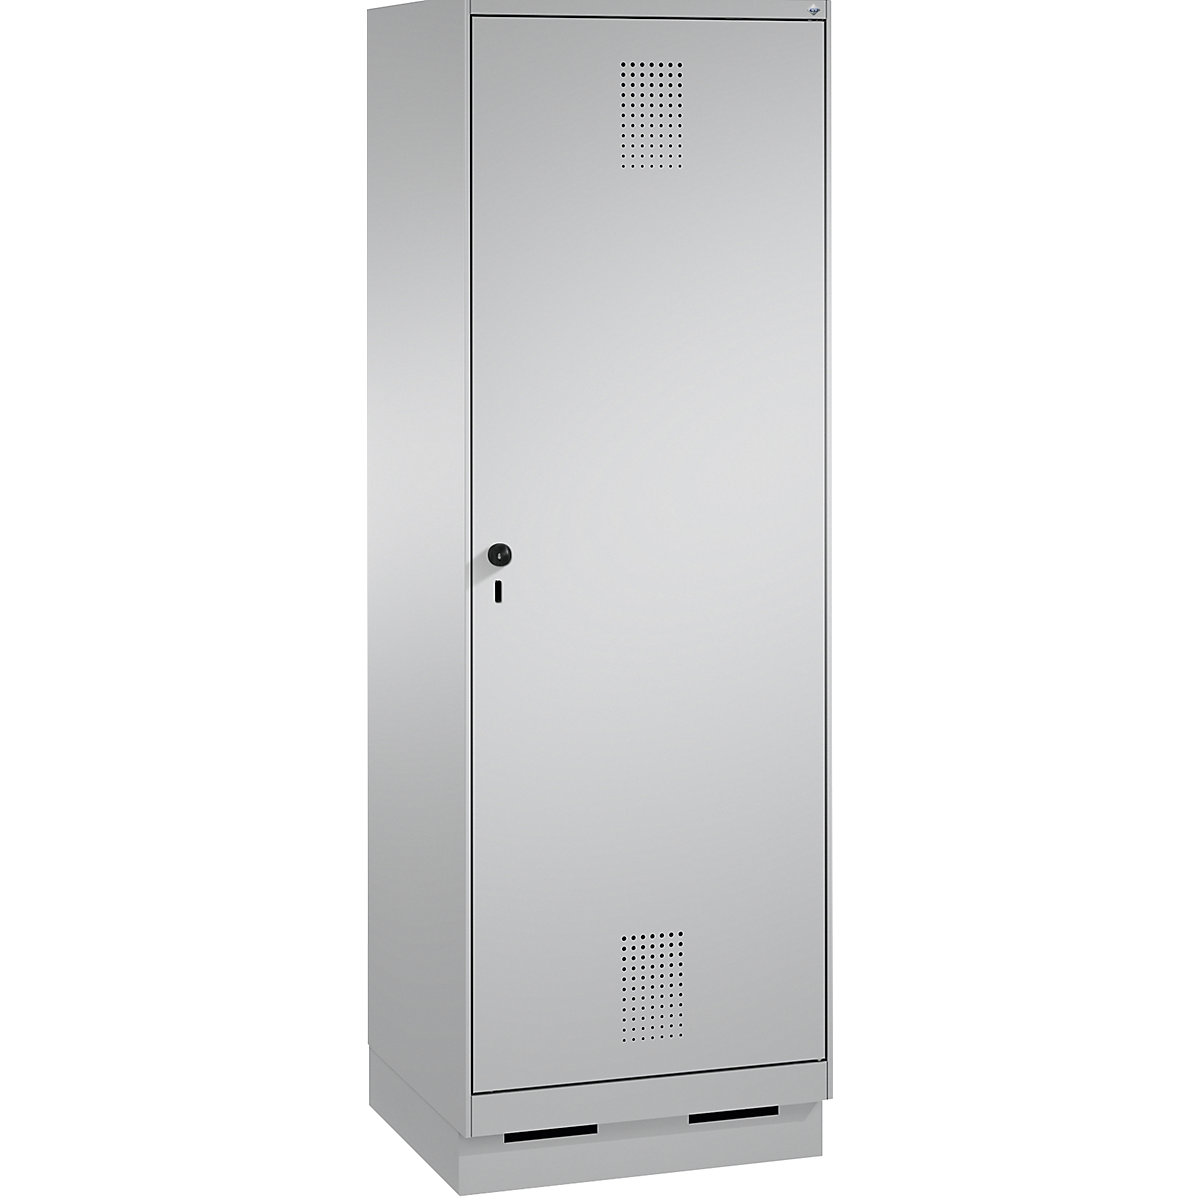 Garderobna omara EVOLO, vrata čez 2 predelka, s podnožjem – C+P, 2 razdelka, 1 vrata, širina razdelka 300 mm, bela aluminijasta / bela aluminijasta-15